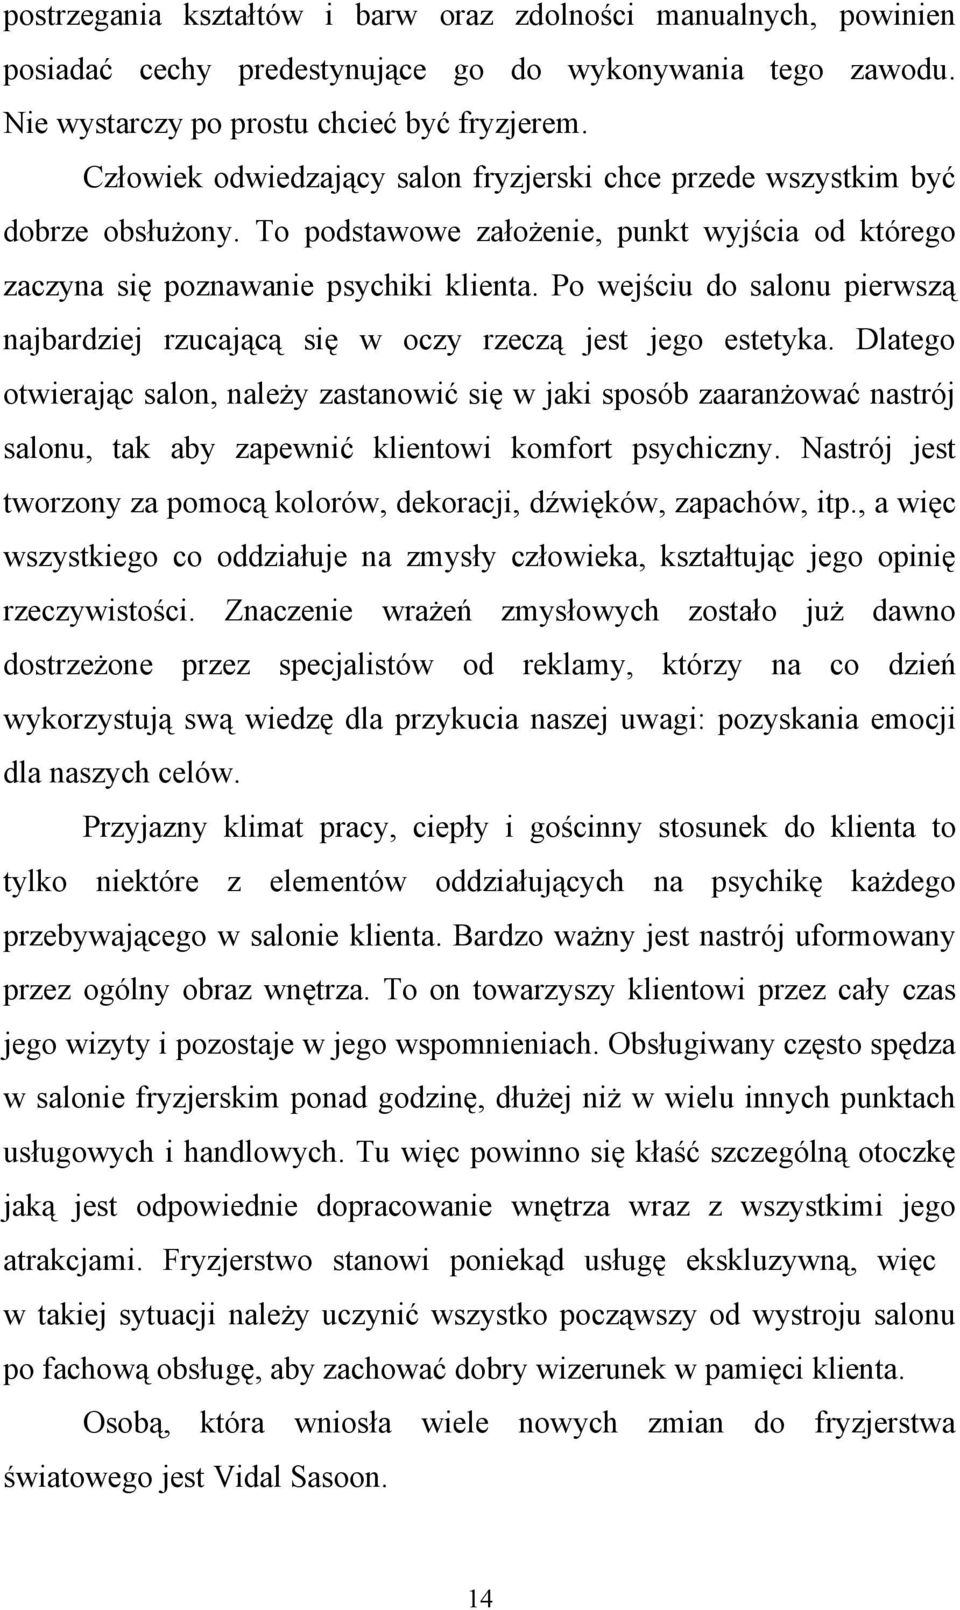 Historia zawodu fryzjerskiego - PDF Darmowe pobieranie